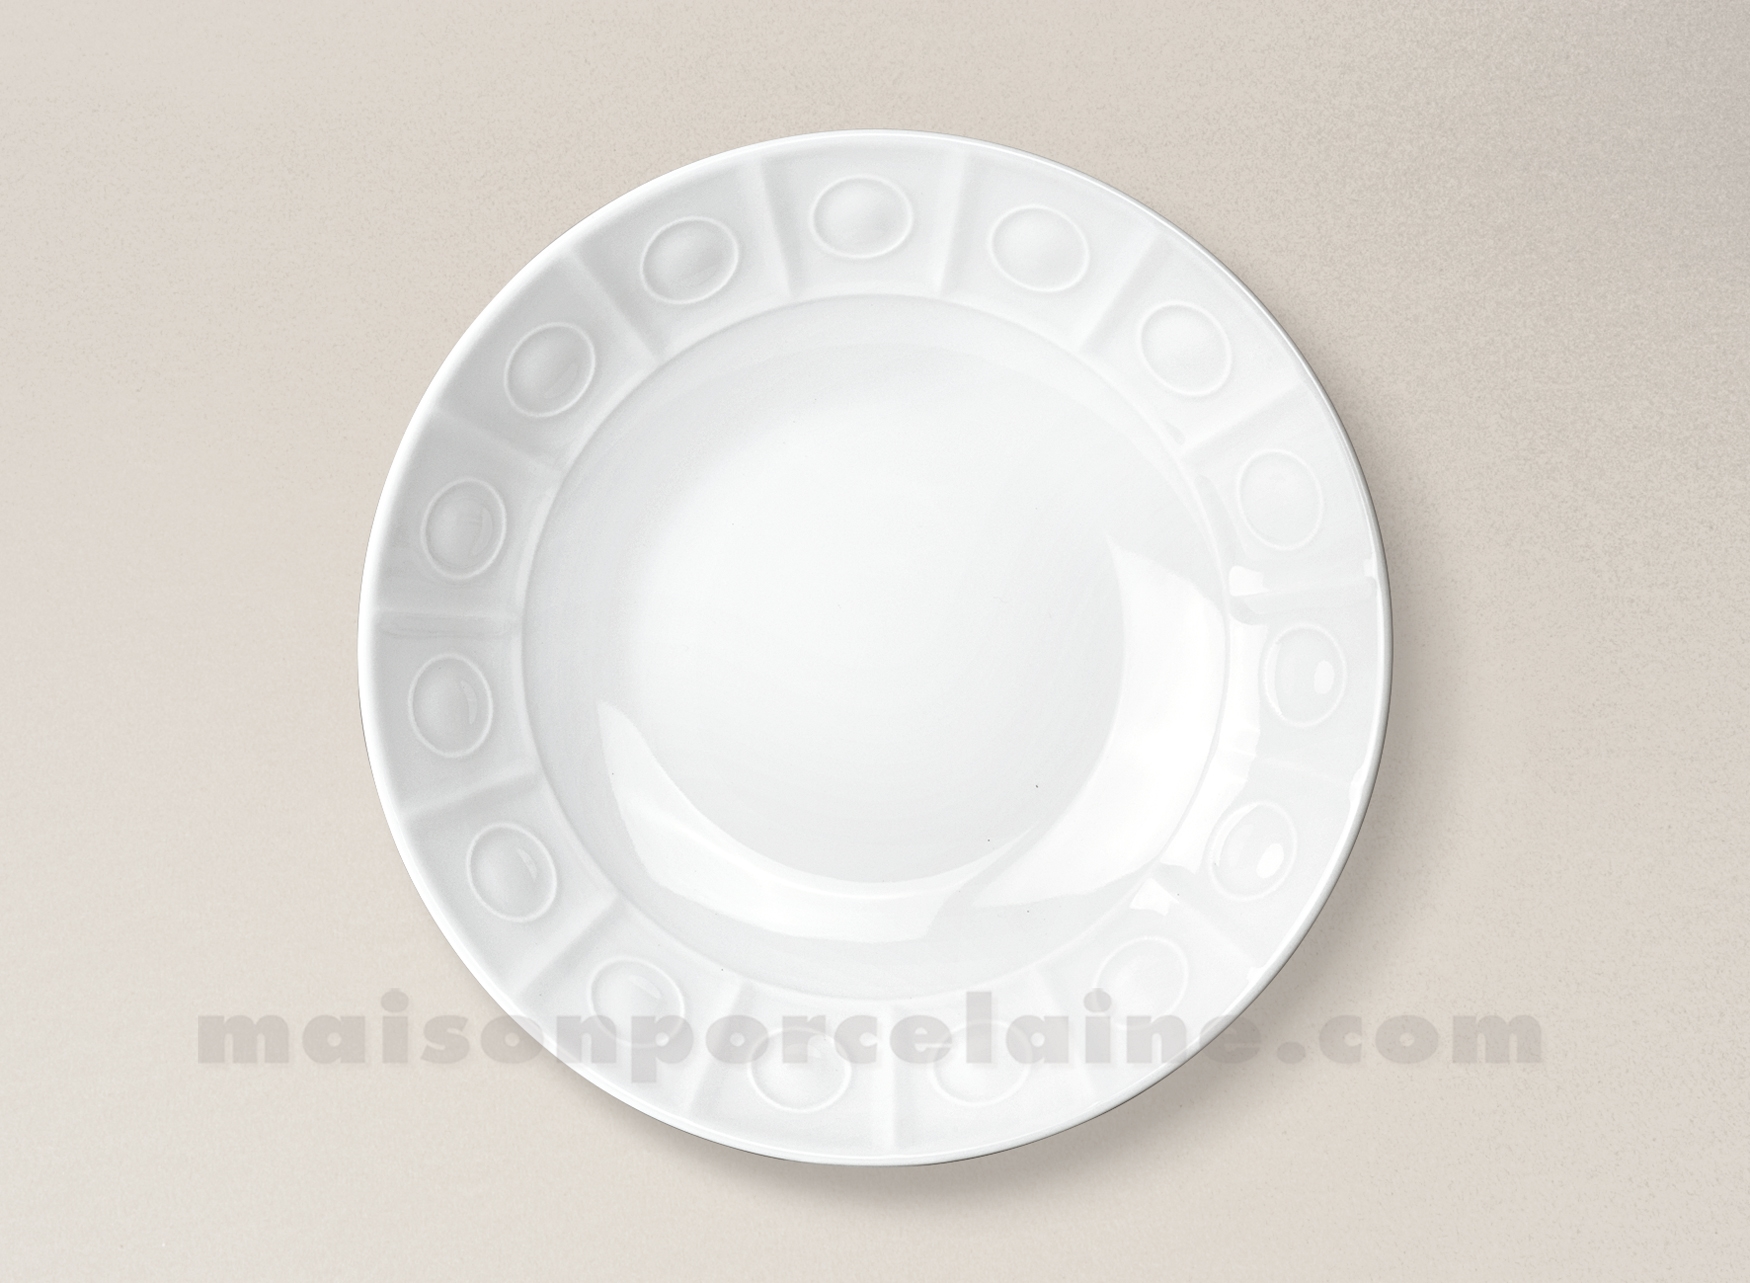 https://www.maisonporcelaine.com/b/assiette-creuse-calotte-limoges-porcelaine-blanche-osmose-215__10616.jpg